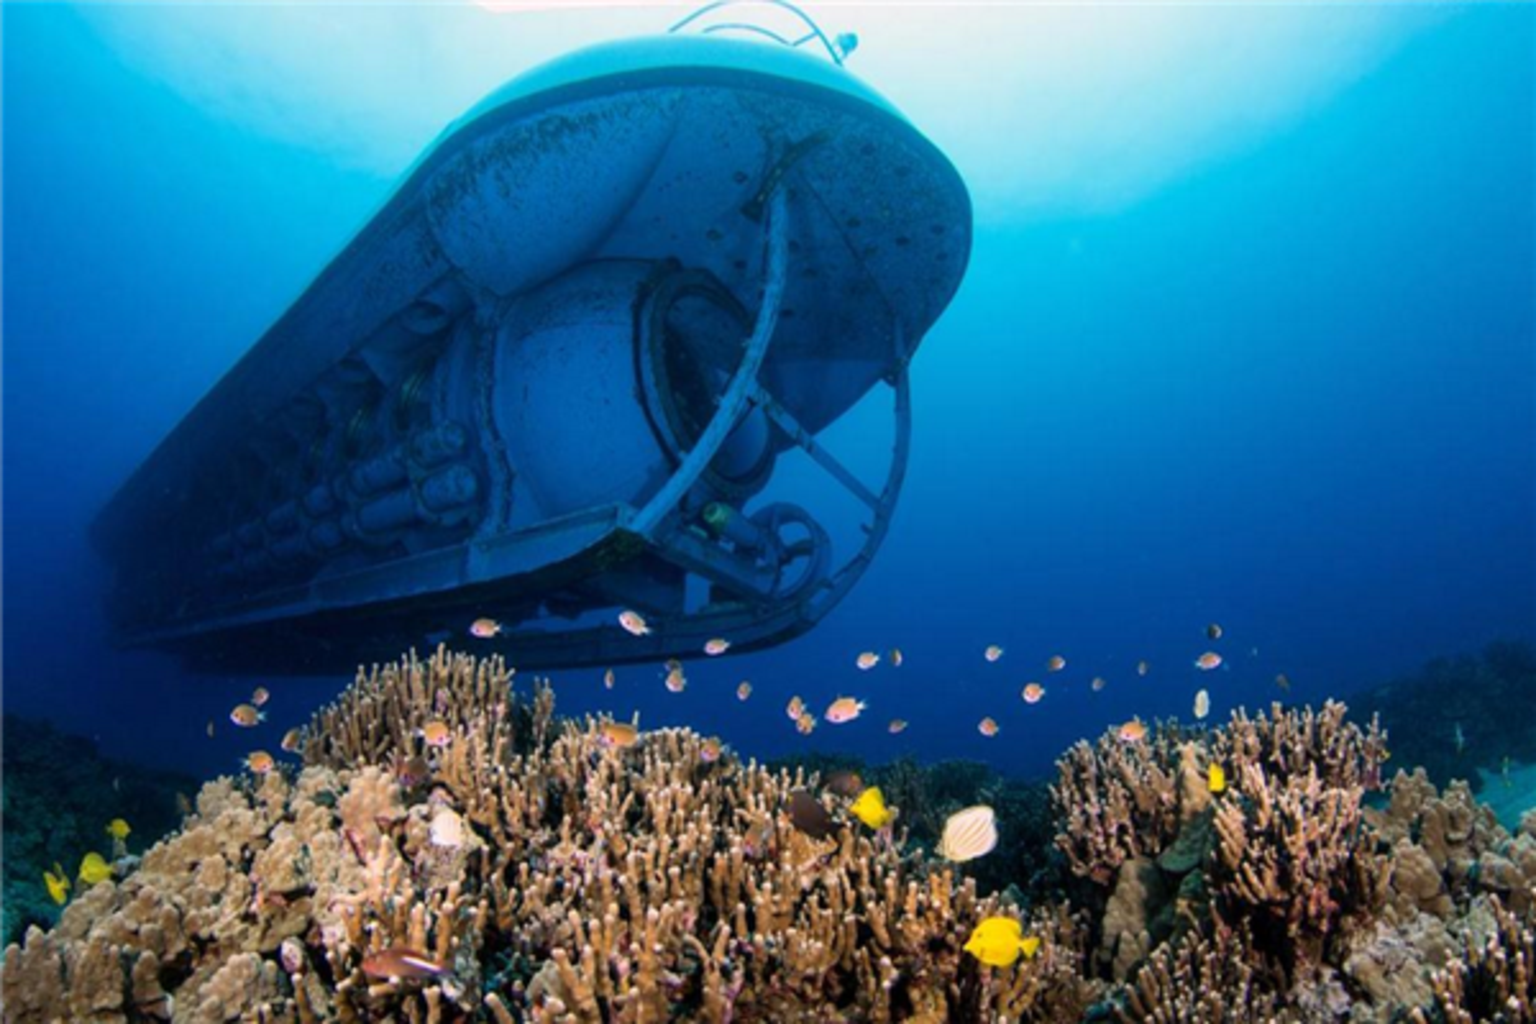 深海之美——夏威夷 亚特兰蒂斯号潜水艇探索之旅